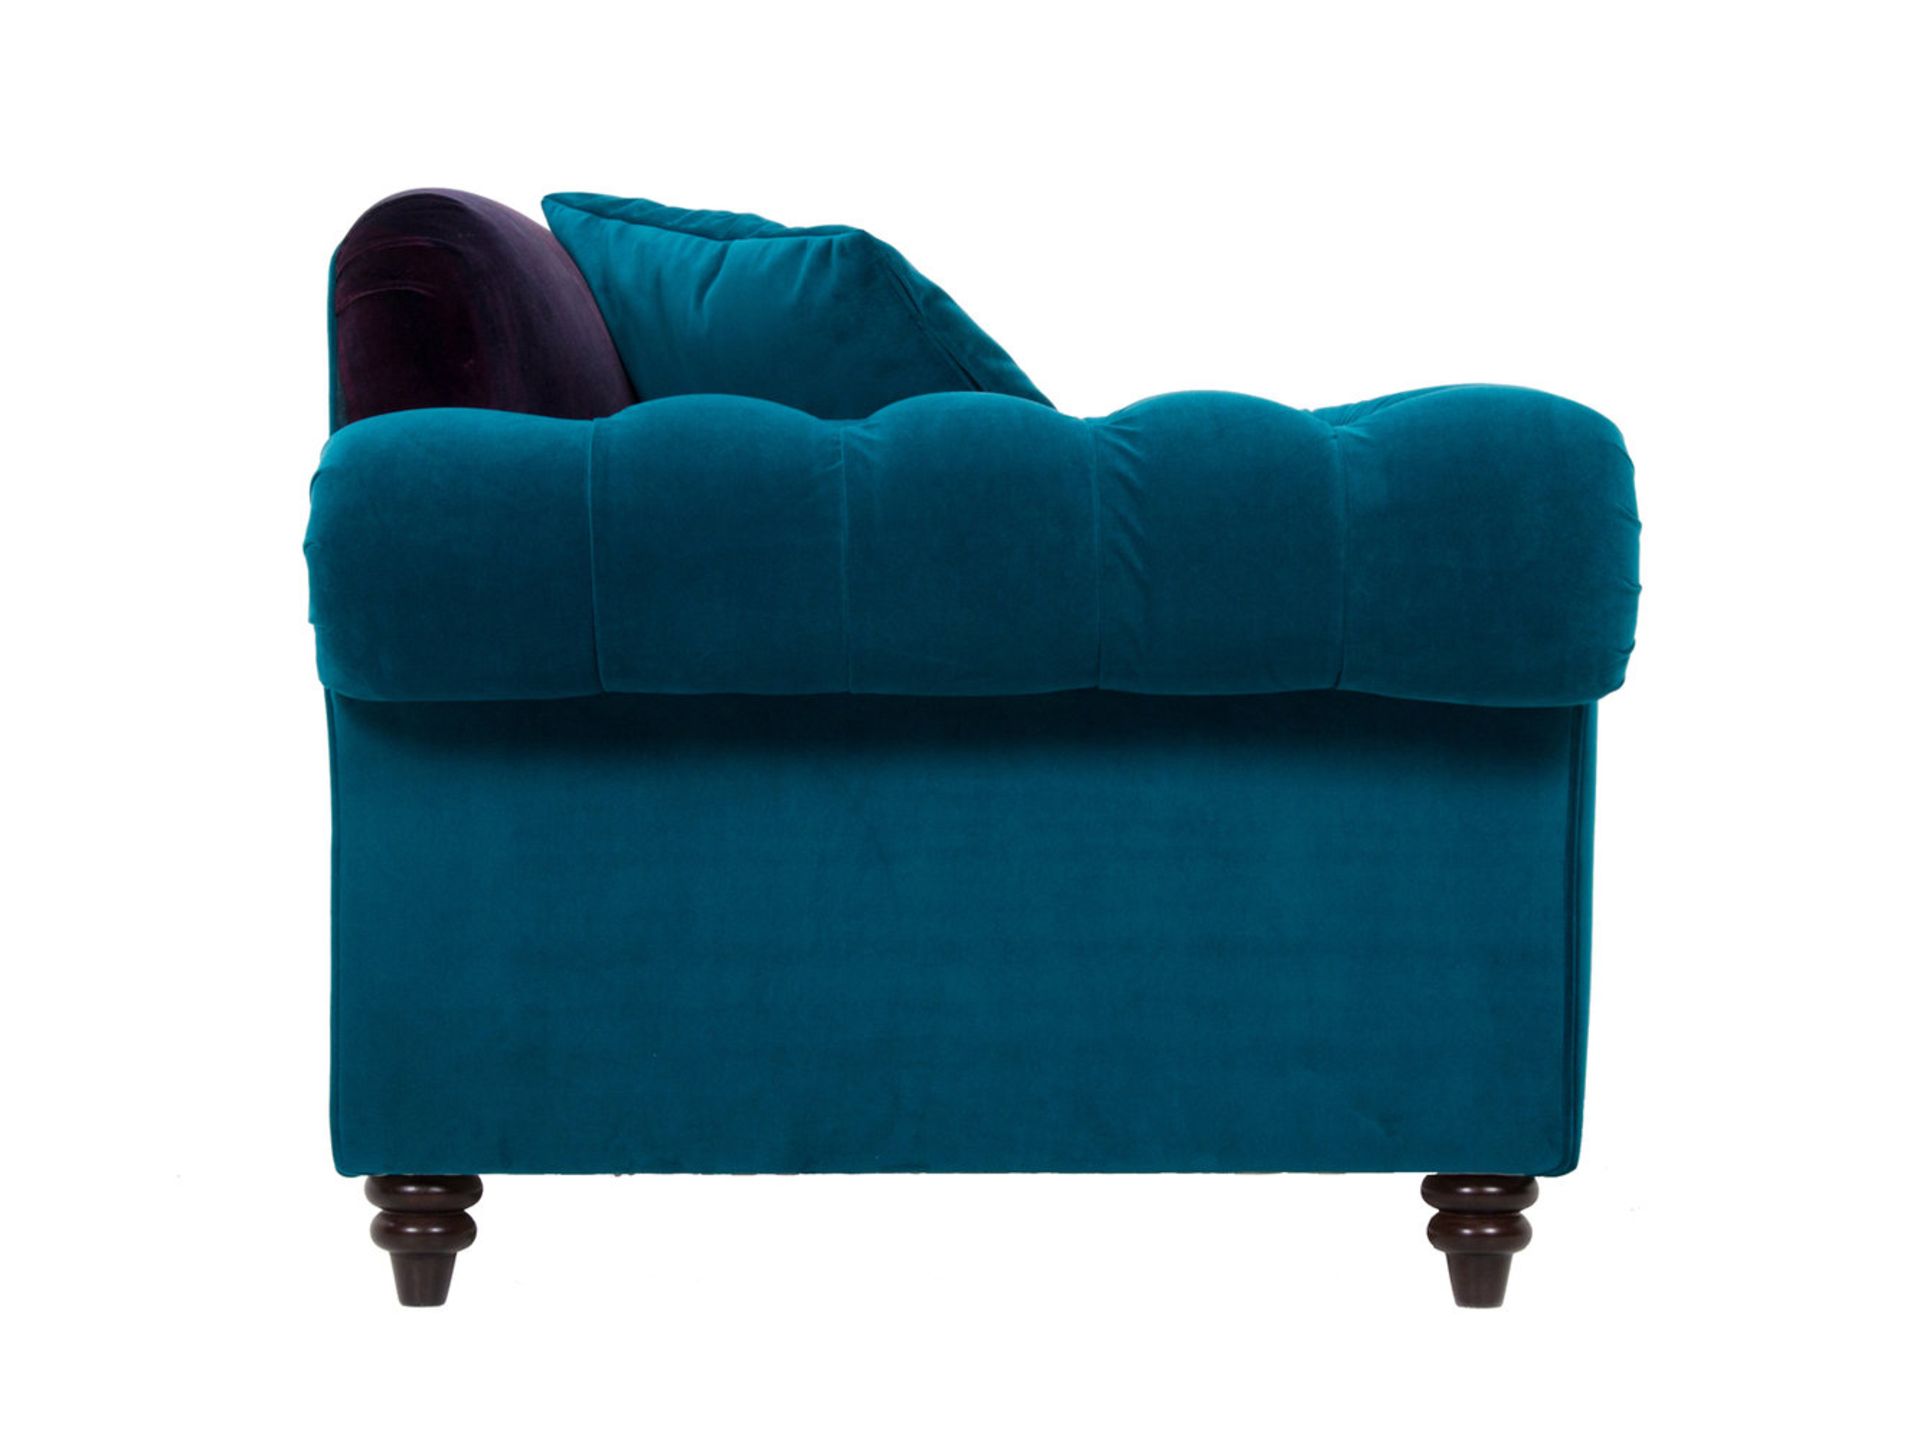 1 x Lytton Mallard Sofa Upholstered in Harlequin Velvet Fabric - RRP £1,259! - Image 6 of 7